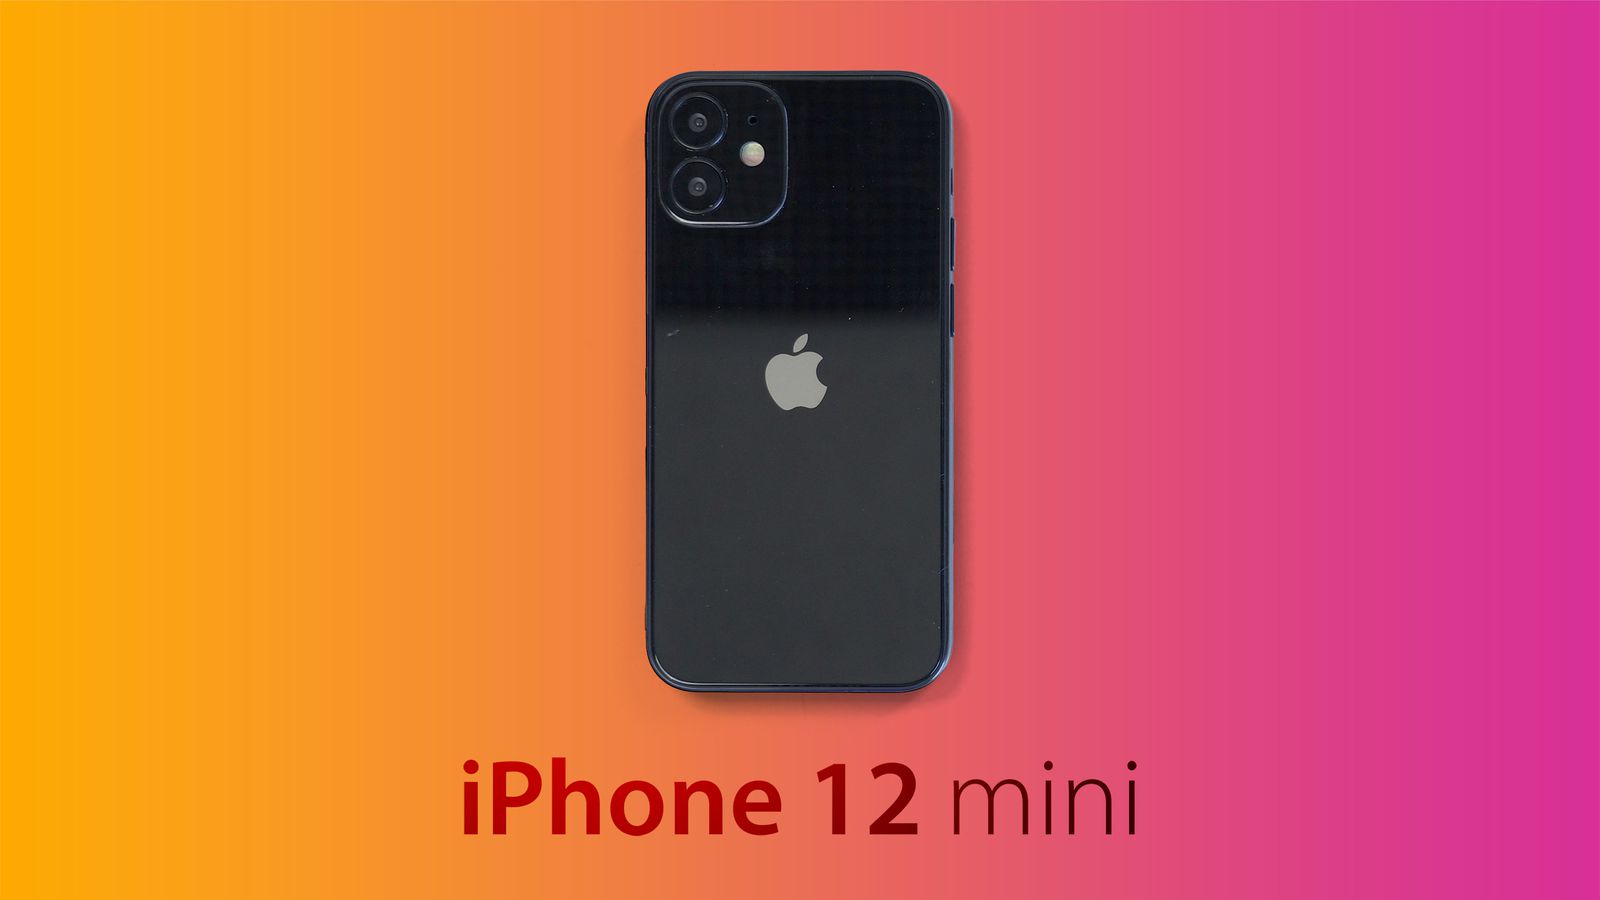 Thiết bị di động nhỏ gọn mà mạnh mẽ - iPhone 12 Mini chắc chắn khiến bạn bất ngờ với những tính năng tuyệt vời. Đến với hình ảnh này, bạn sẽ được xem trực tiếp thiết kế đặc biệt, màn hình OLED siêu nét và hơn thế nữa. Tất cả sẽ khiến bạn yêu thêm chiếc điện thoại này. 